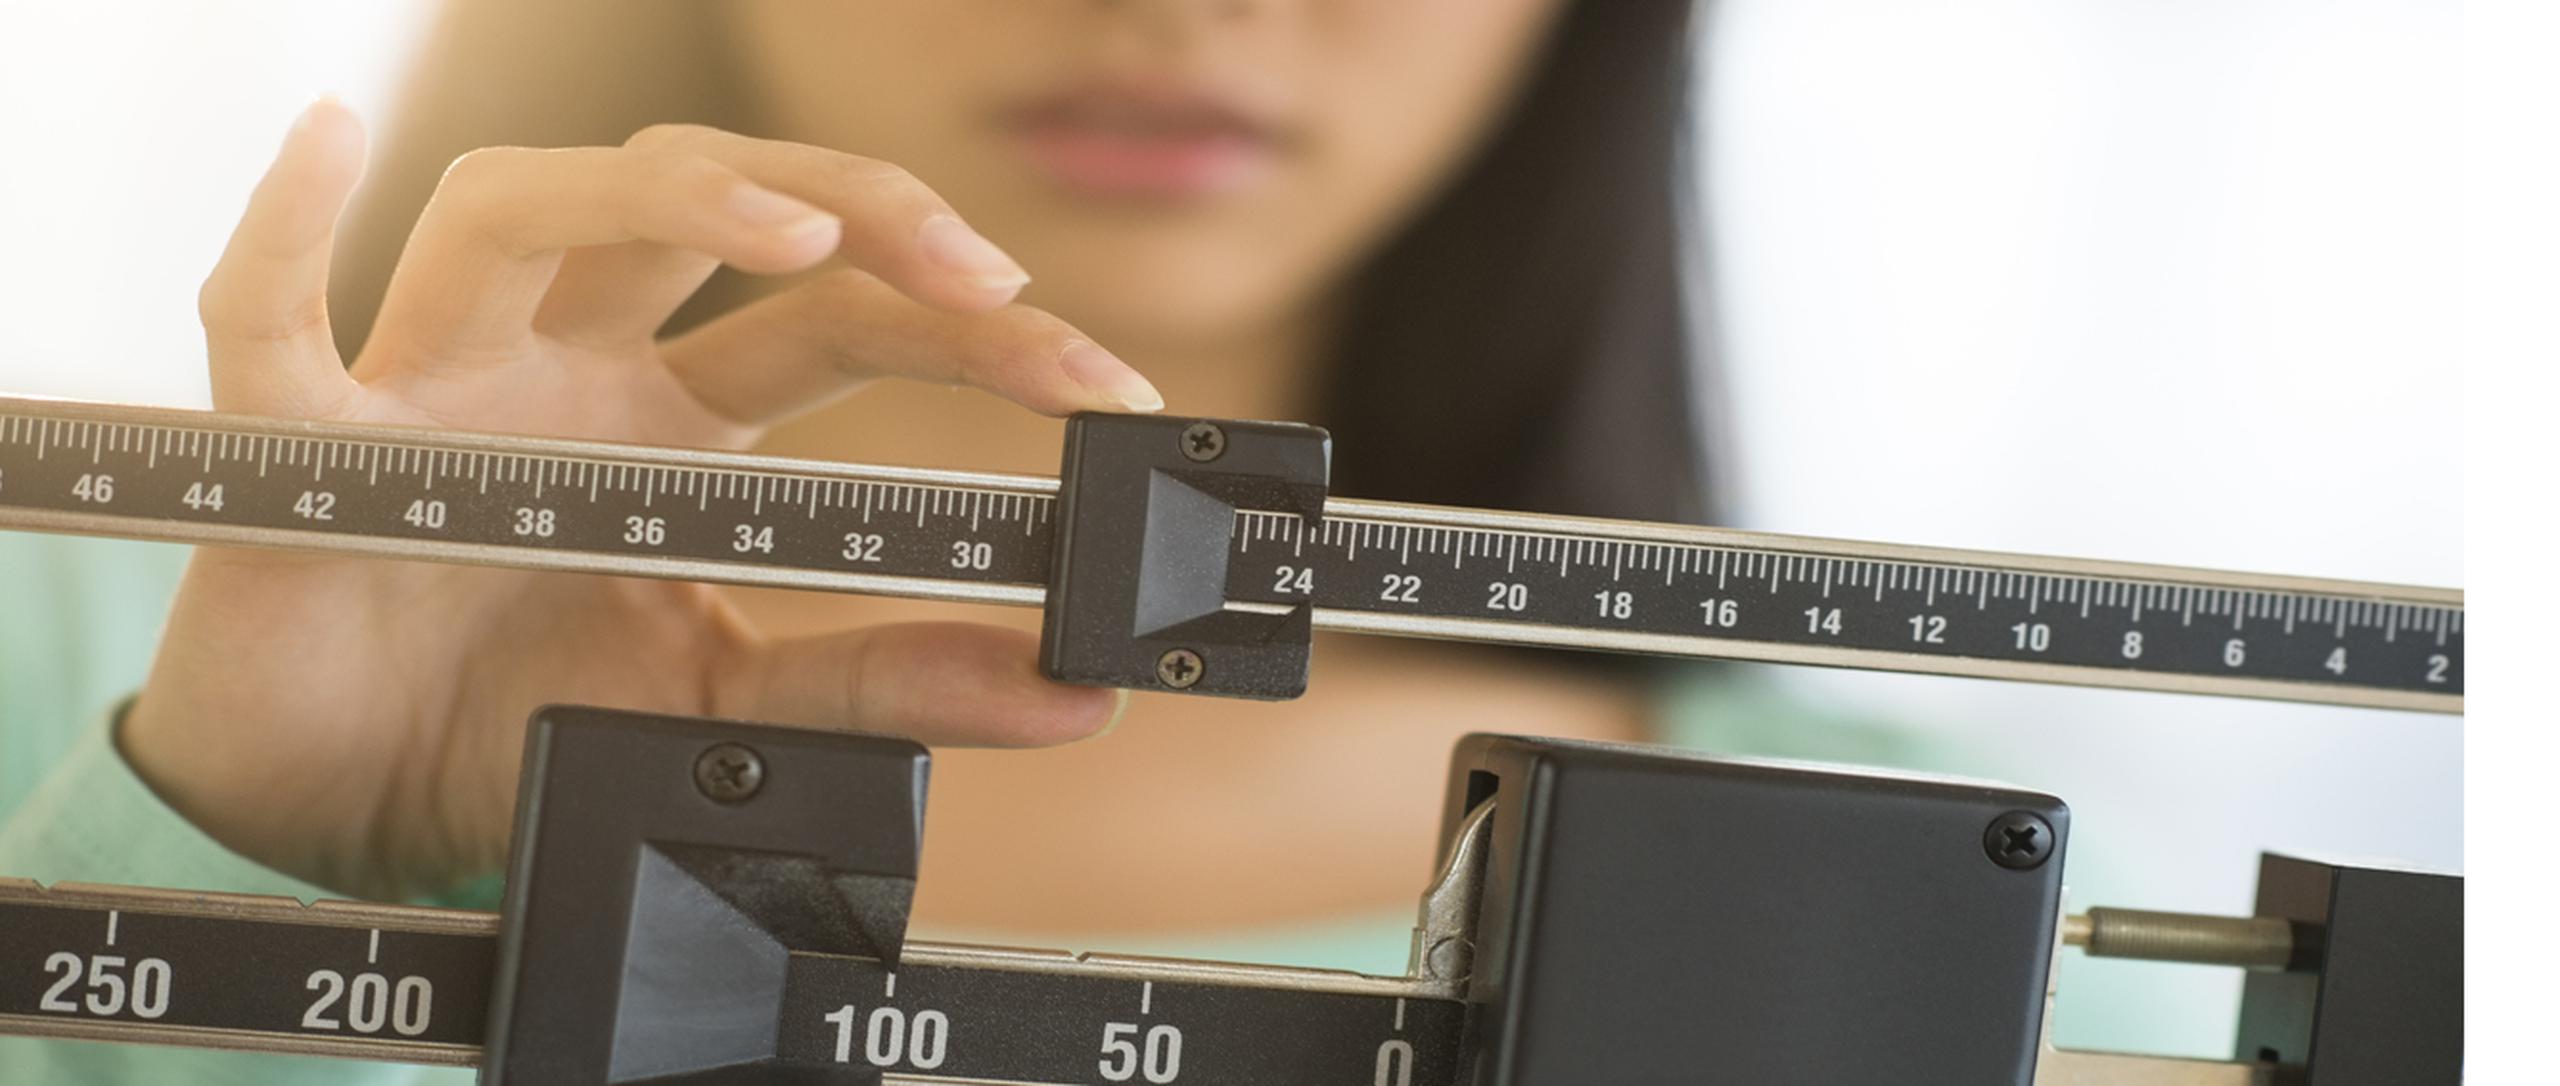 Tu ingesta de calorías es uno de los factores que determina tu peso.